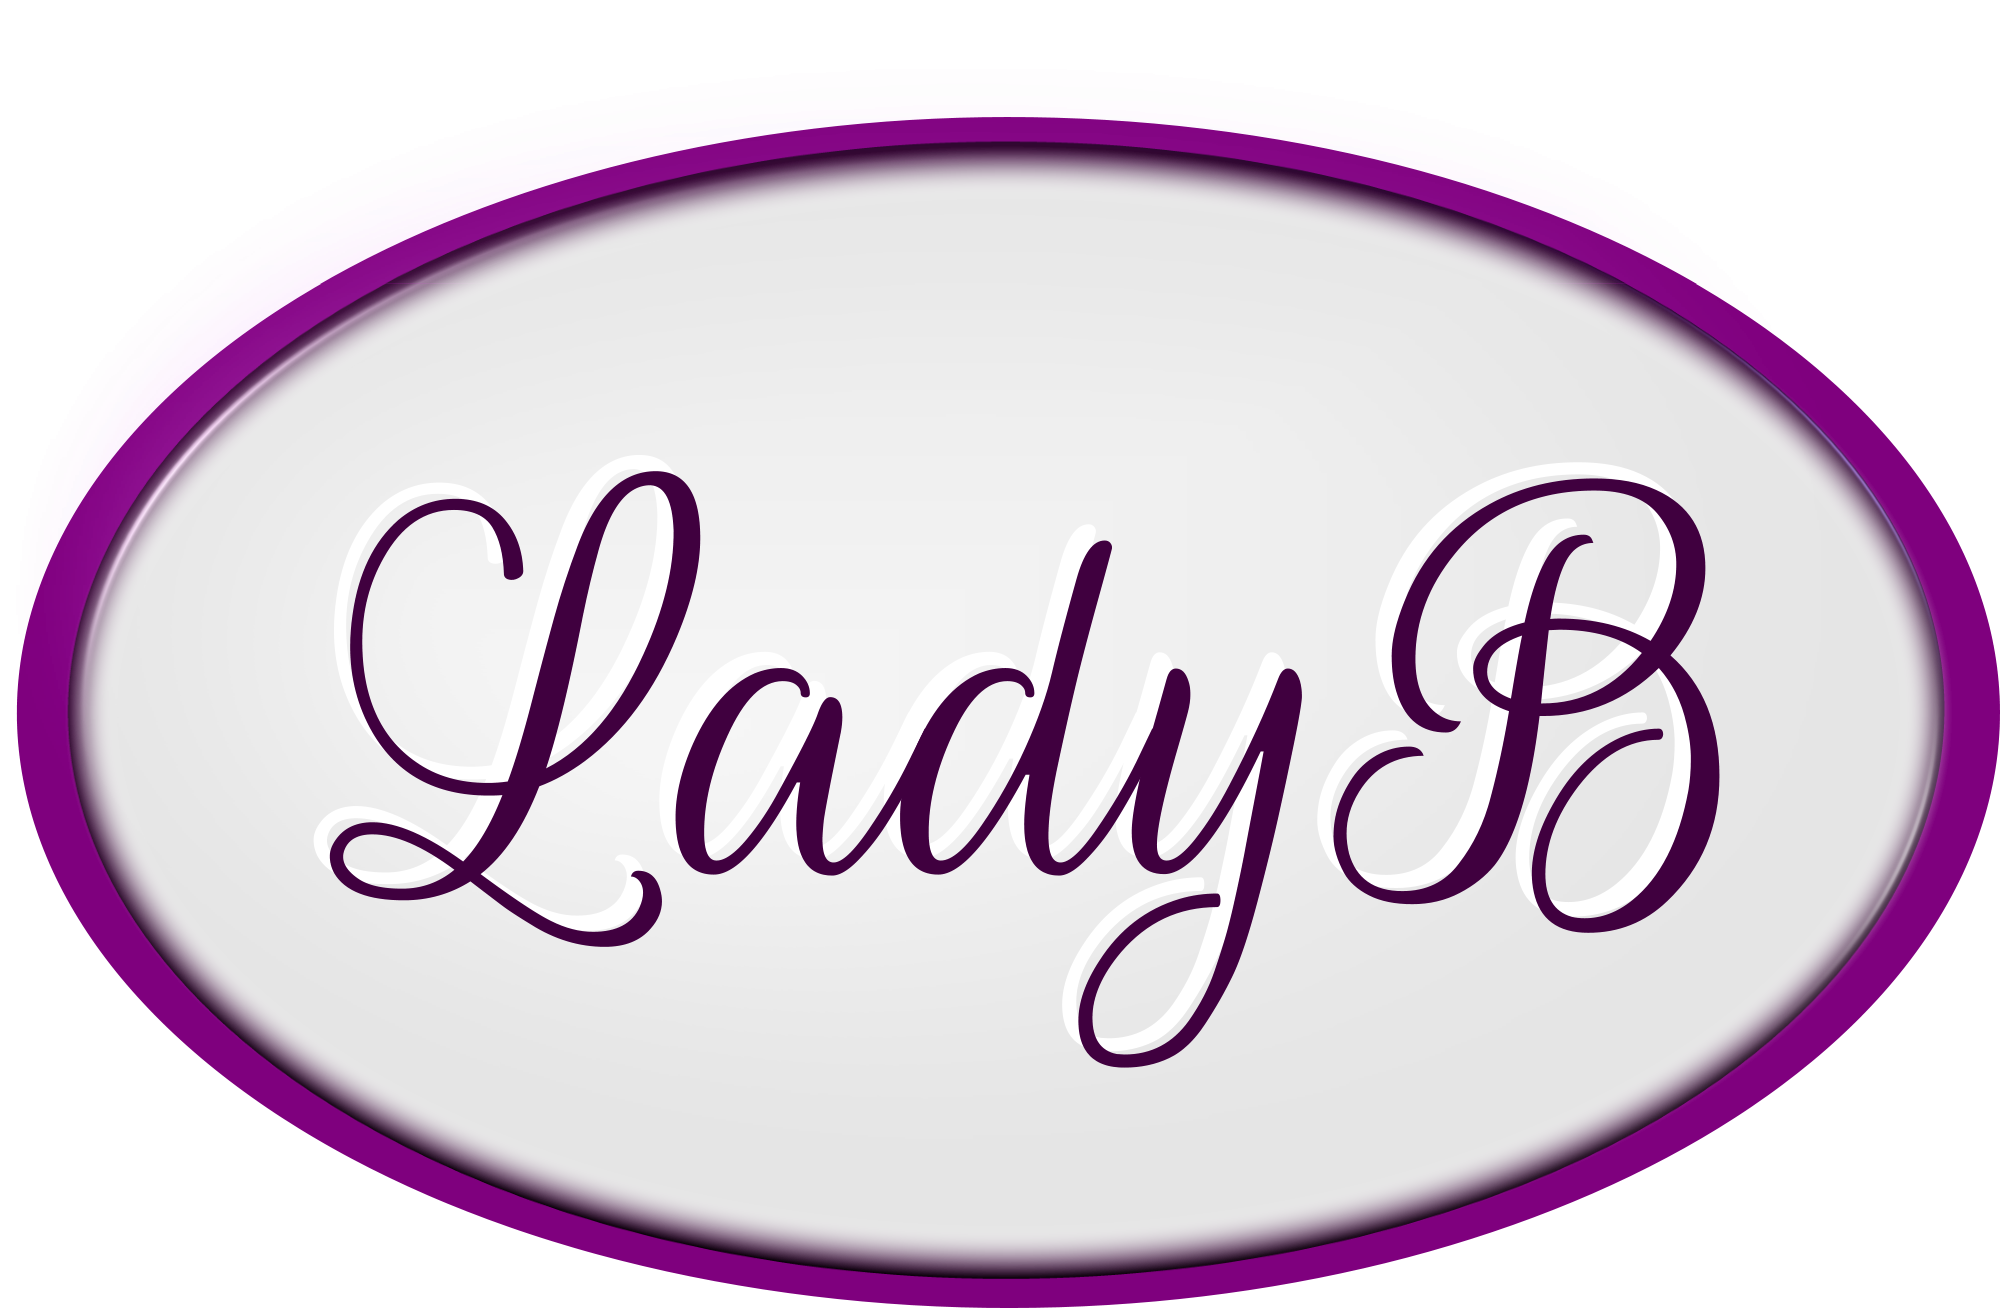 Lady B